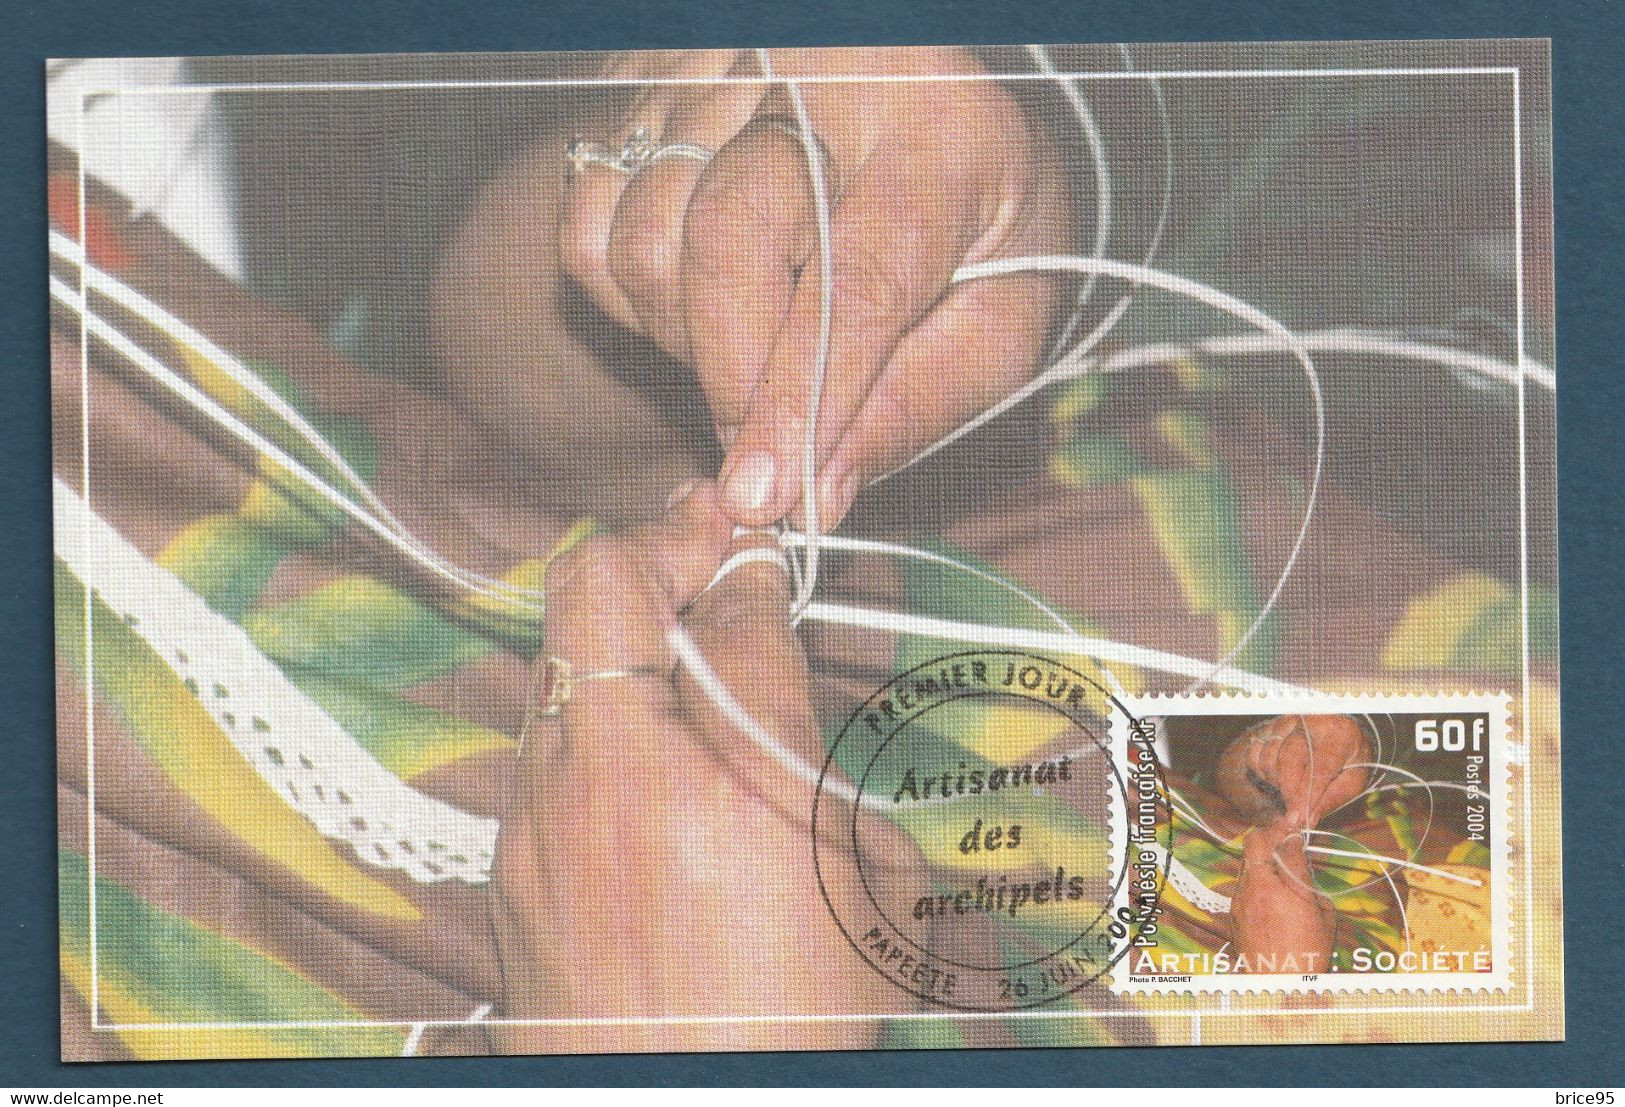 ⭐ Polynésie Française - Carte Maximum - Premier Jour - FDC - Artisanat Des Archipels - 2004 ⭐ - Maximum Cards